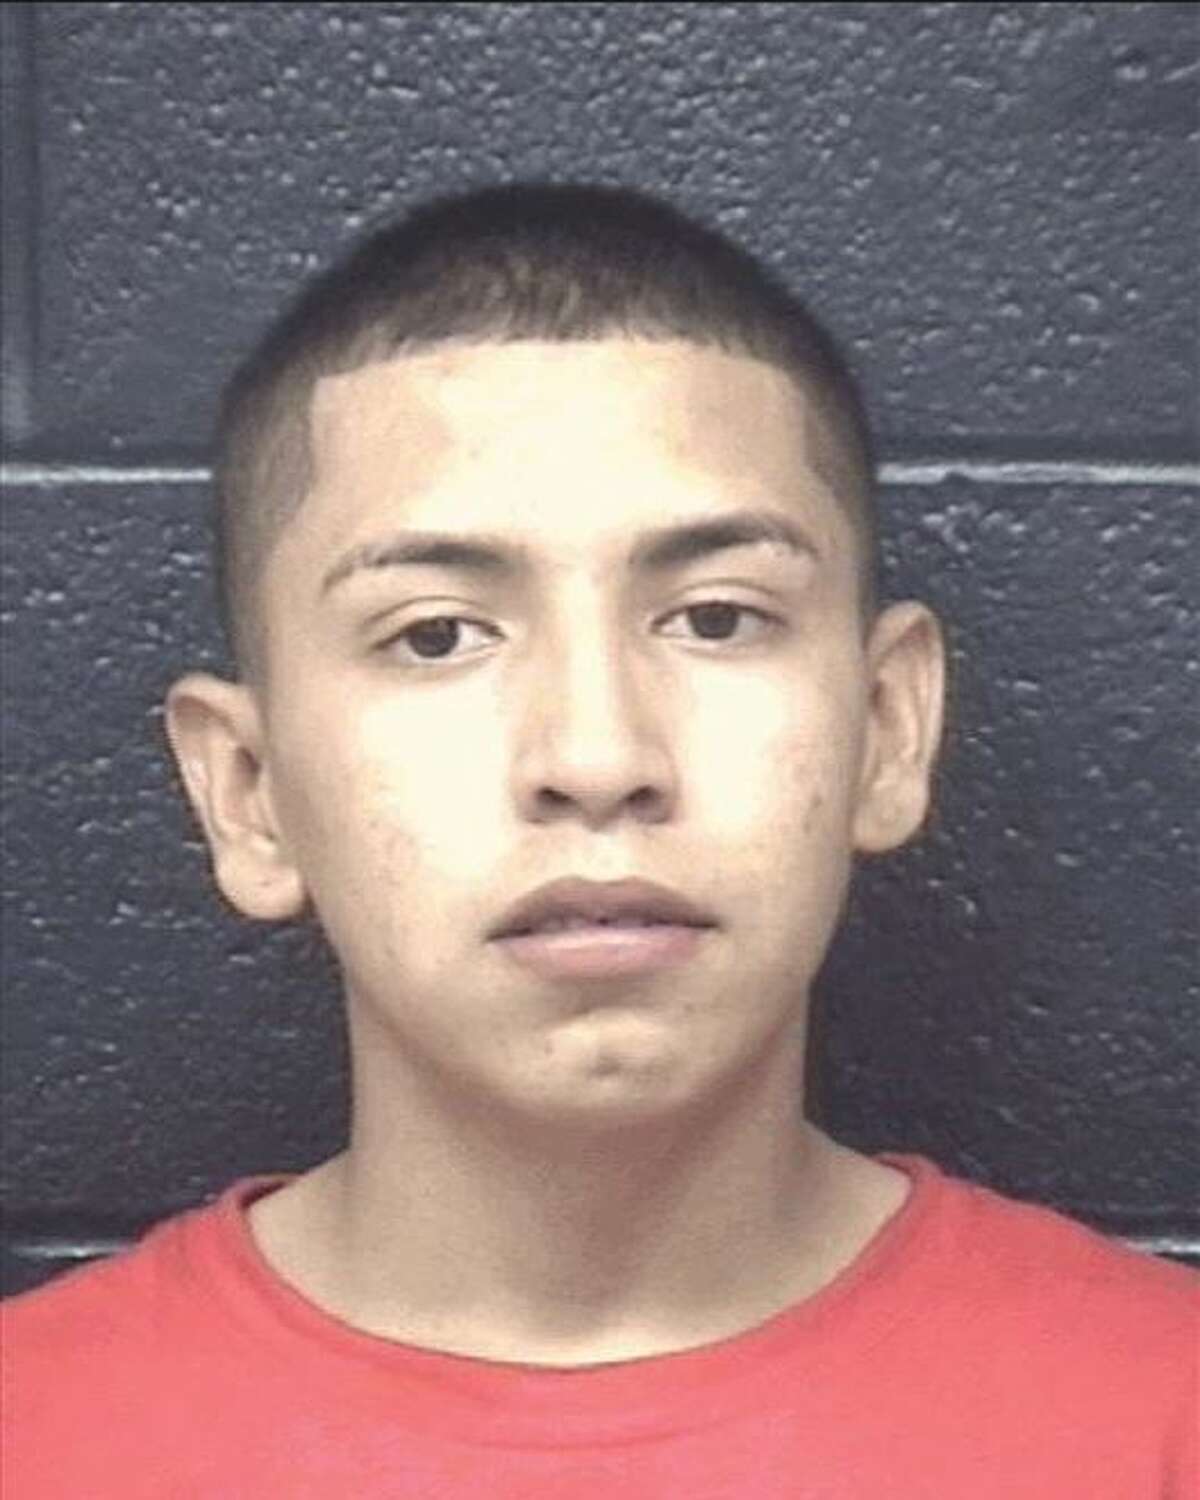 Luis Enrique Saldivar, 19, was originally scheduled for trial on July 10.